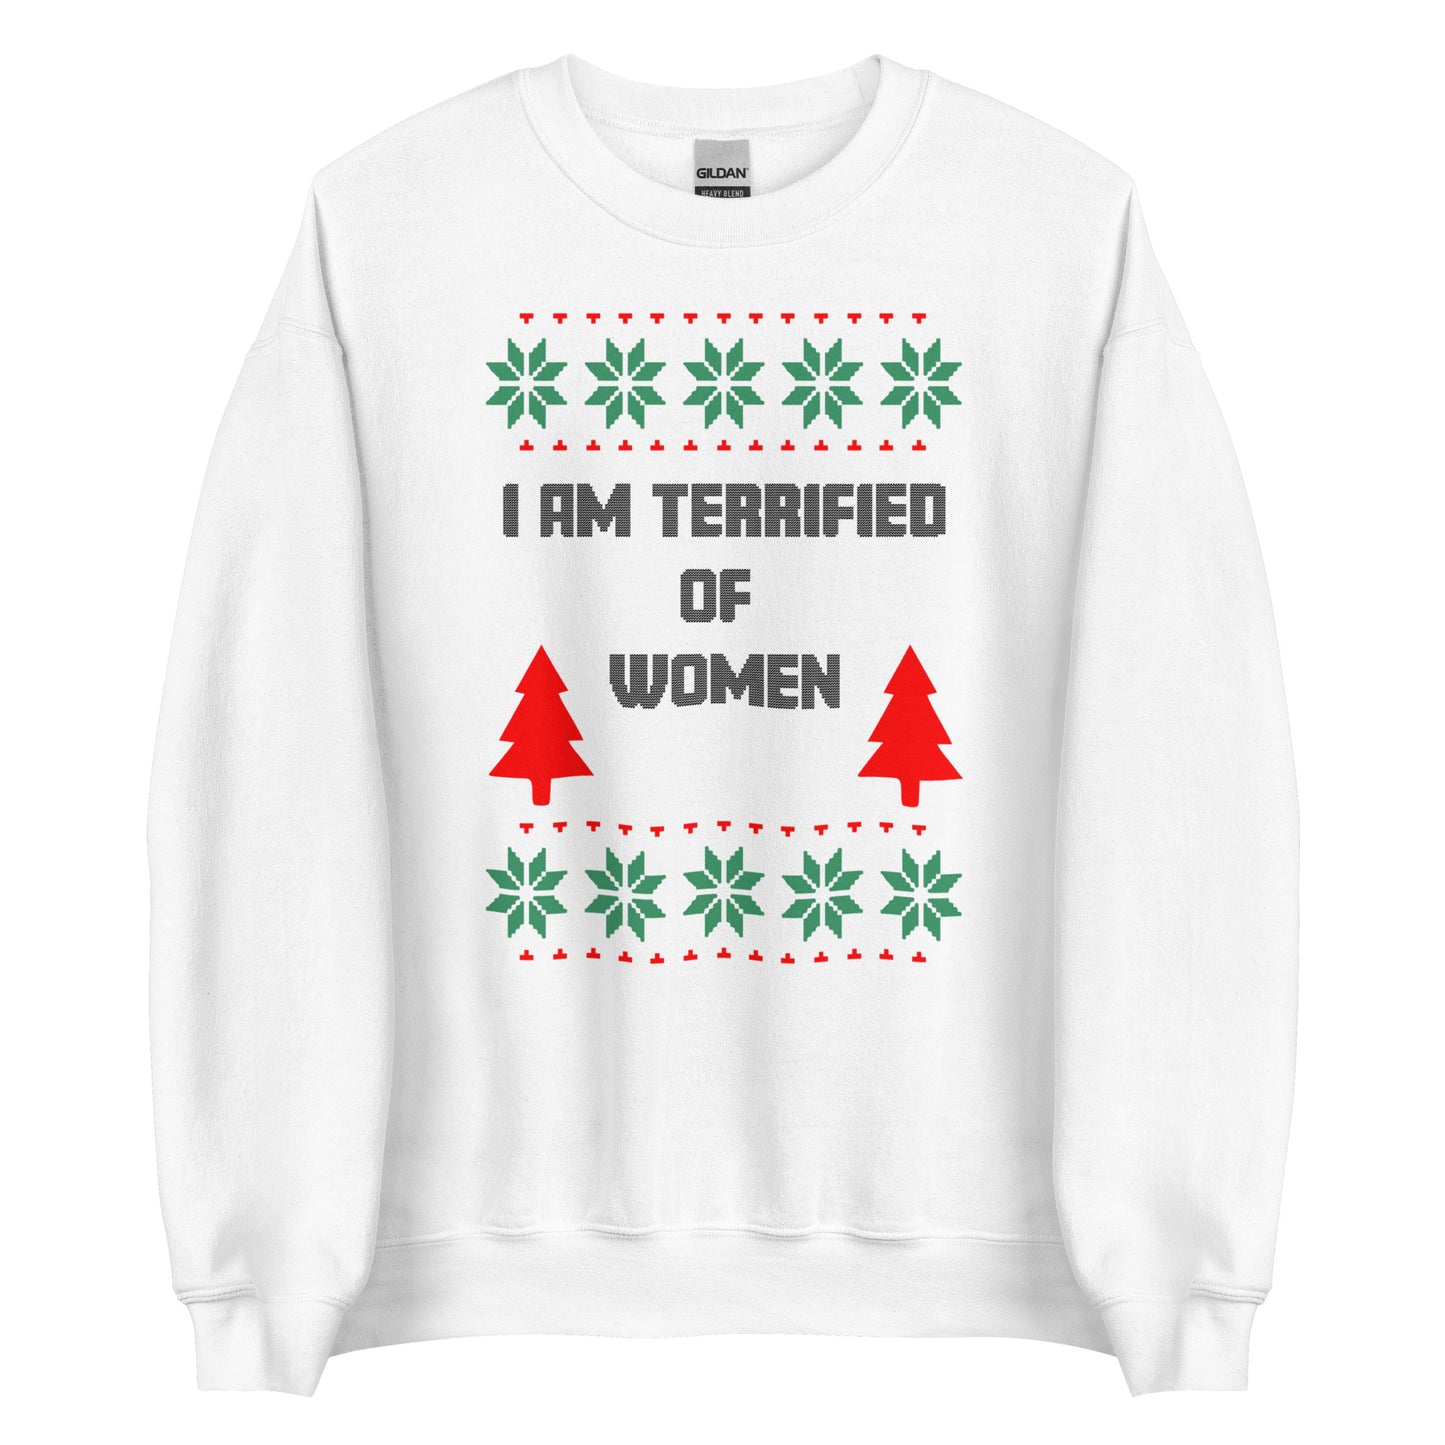 I AM TERRIFIED OF WOMEN